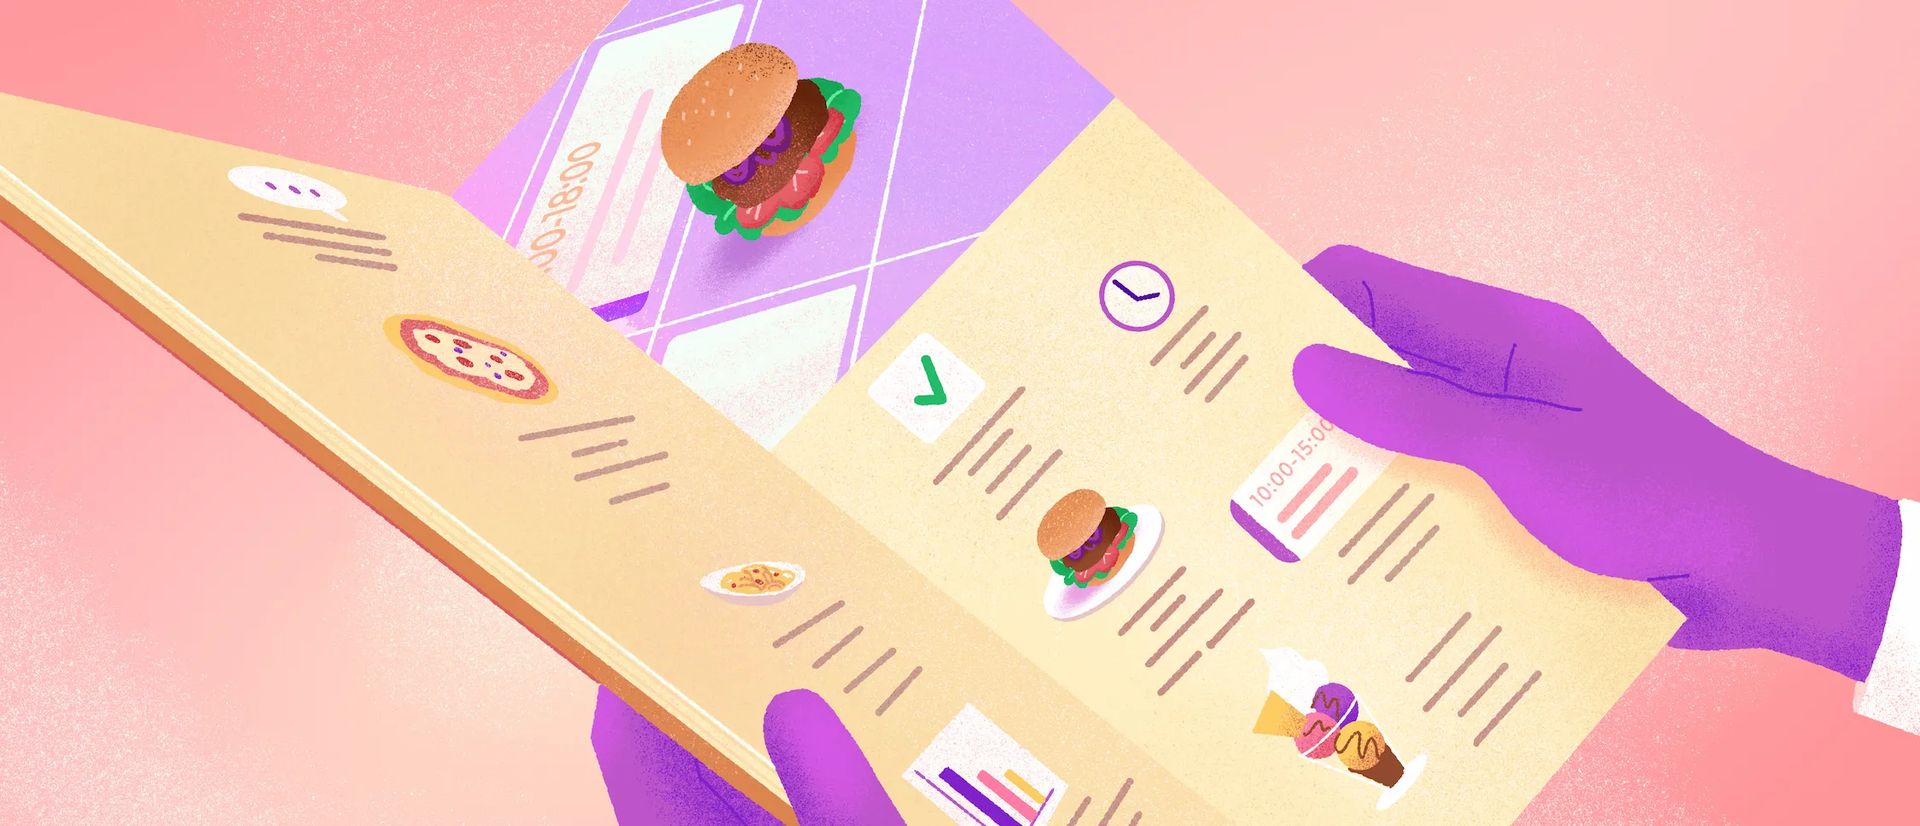 Mains tenant un menu ouvert avec à l'intérieur un hamburger, une coche, une horloge et une glace.